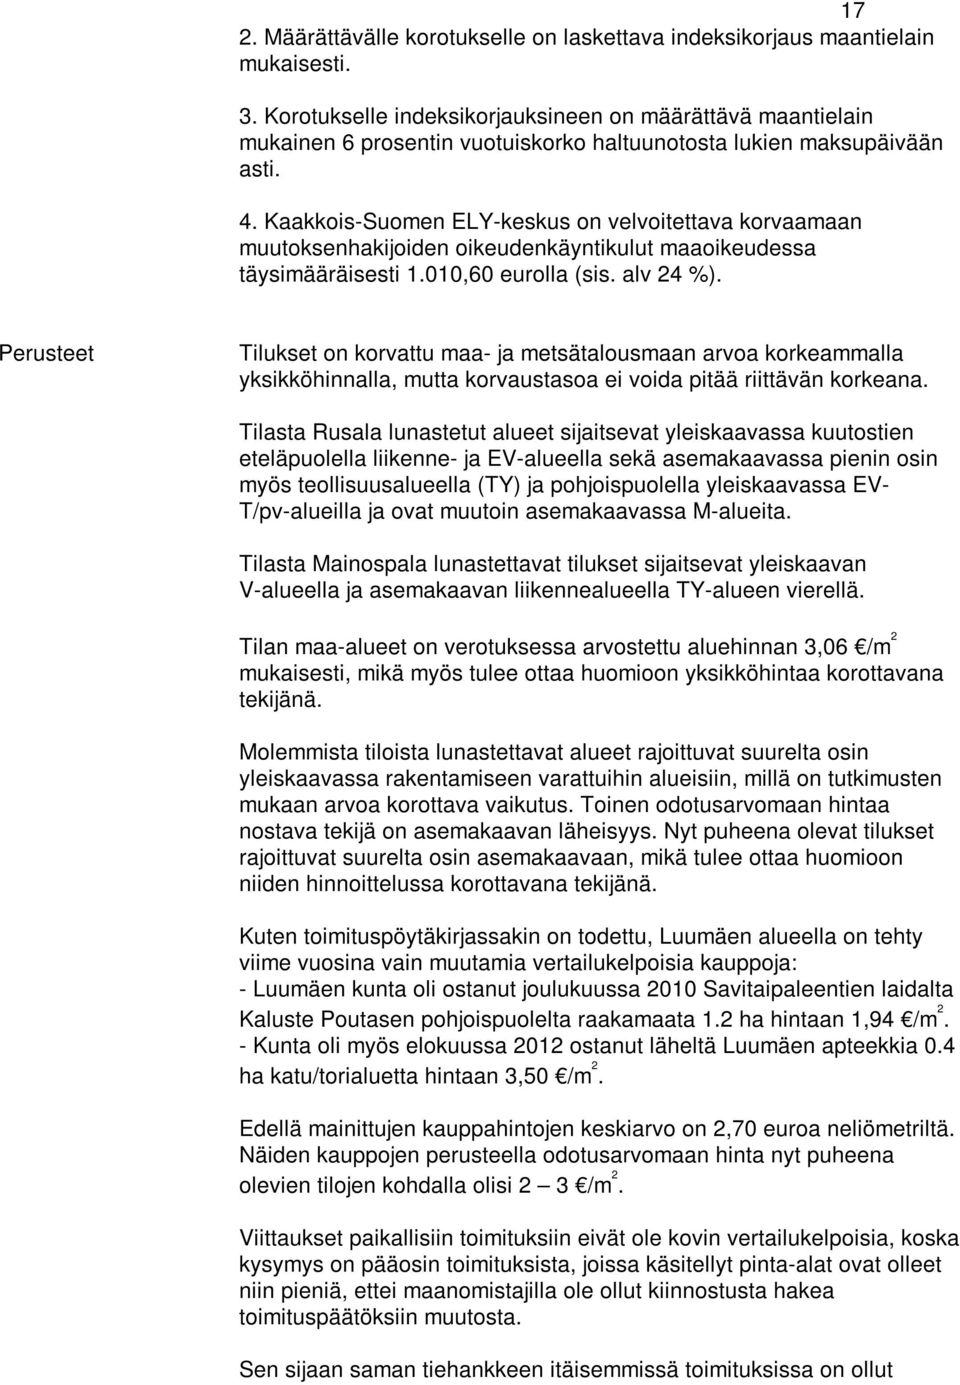 Kaakkois-Suomen ELY-keskus on velvoitettava korvaamaan muutoksenhakijoiden oikeudenkäyntikulut maaoikeudessa täysimääräisesti 1.010,60 eurolla (sis. alv 24 %).